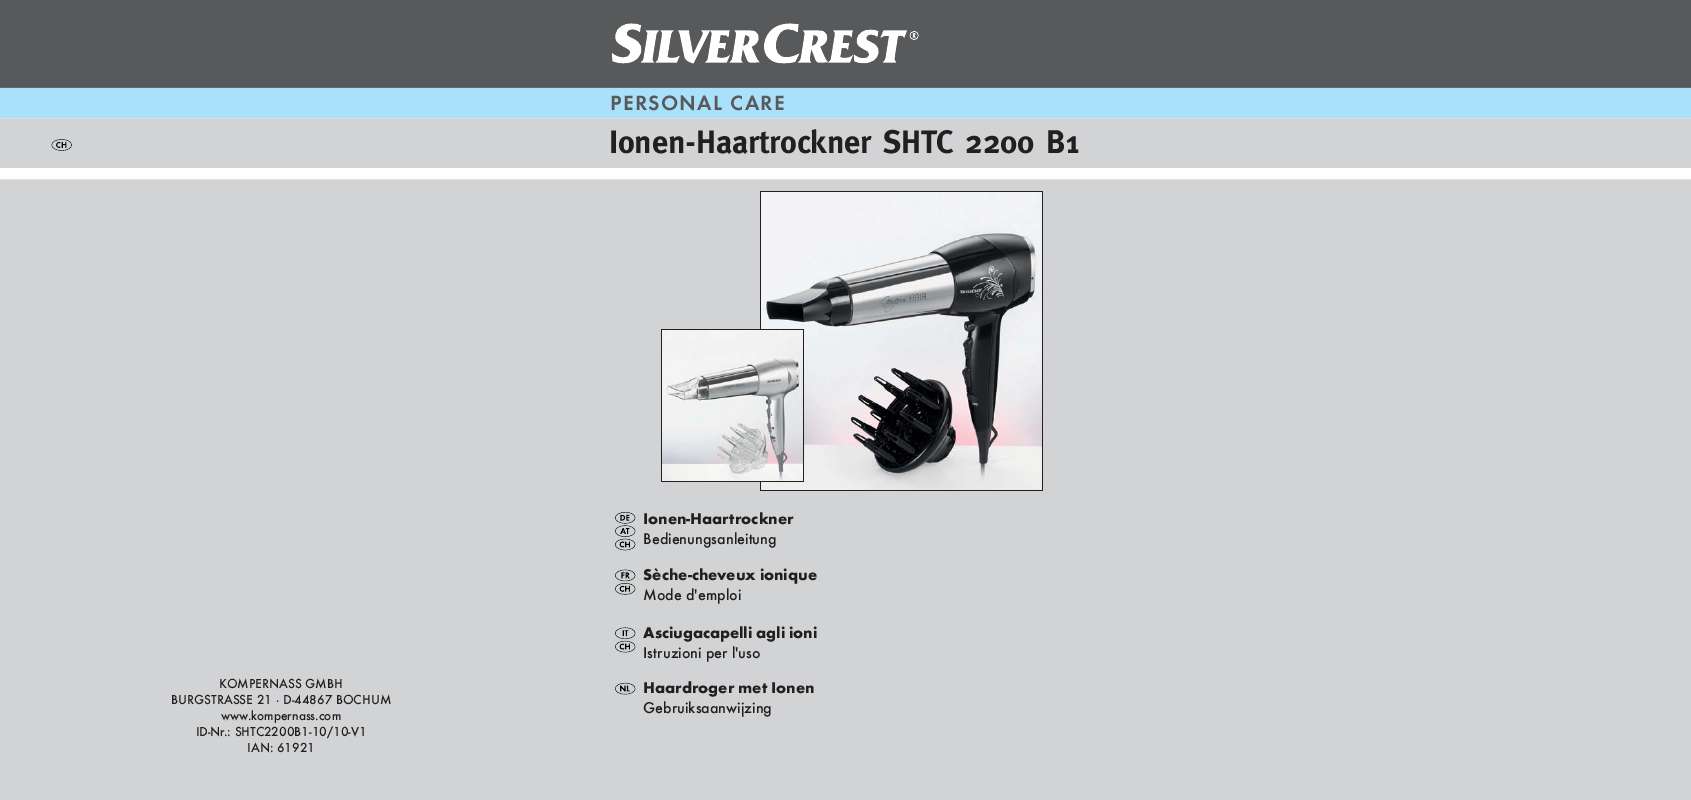 Guide utilisation  SILVERCREST SHTC 2200 B1 IONIC HAIRDRYER  de la marque SILVERCREST